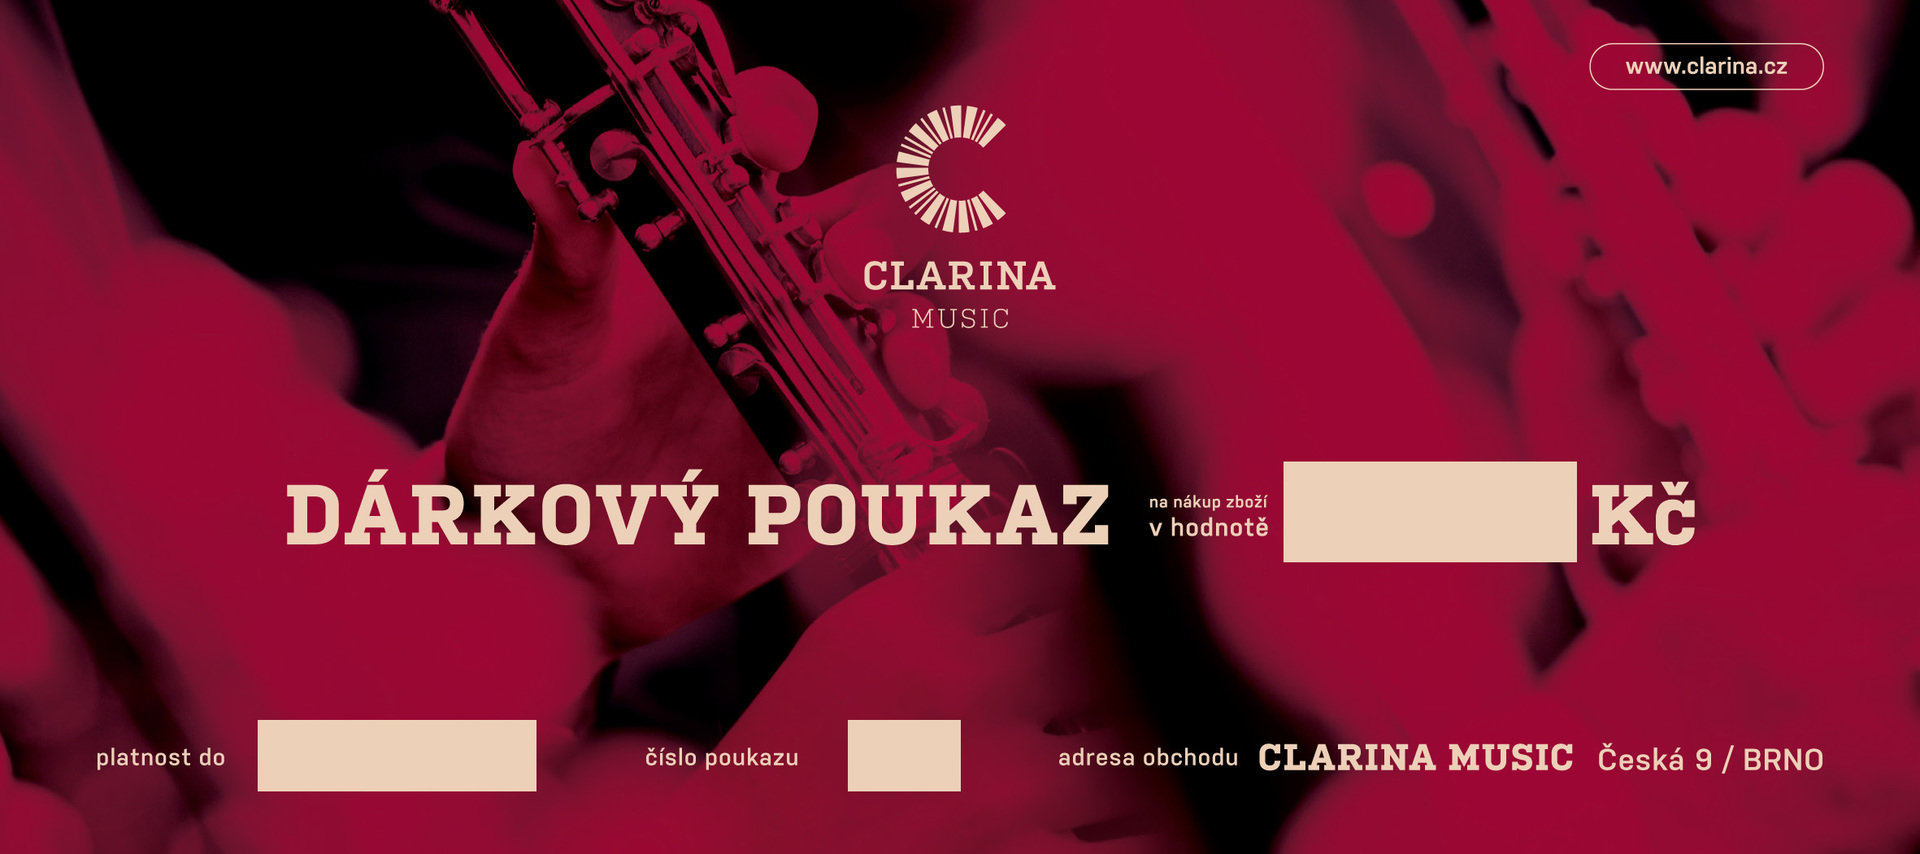 Clarina Music Dárkový poukaz 1500 Kč